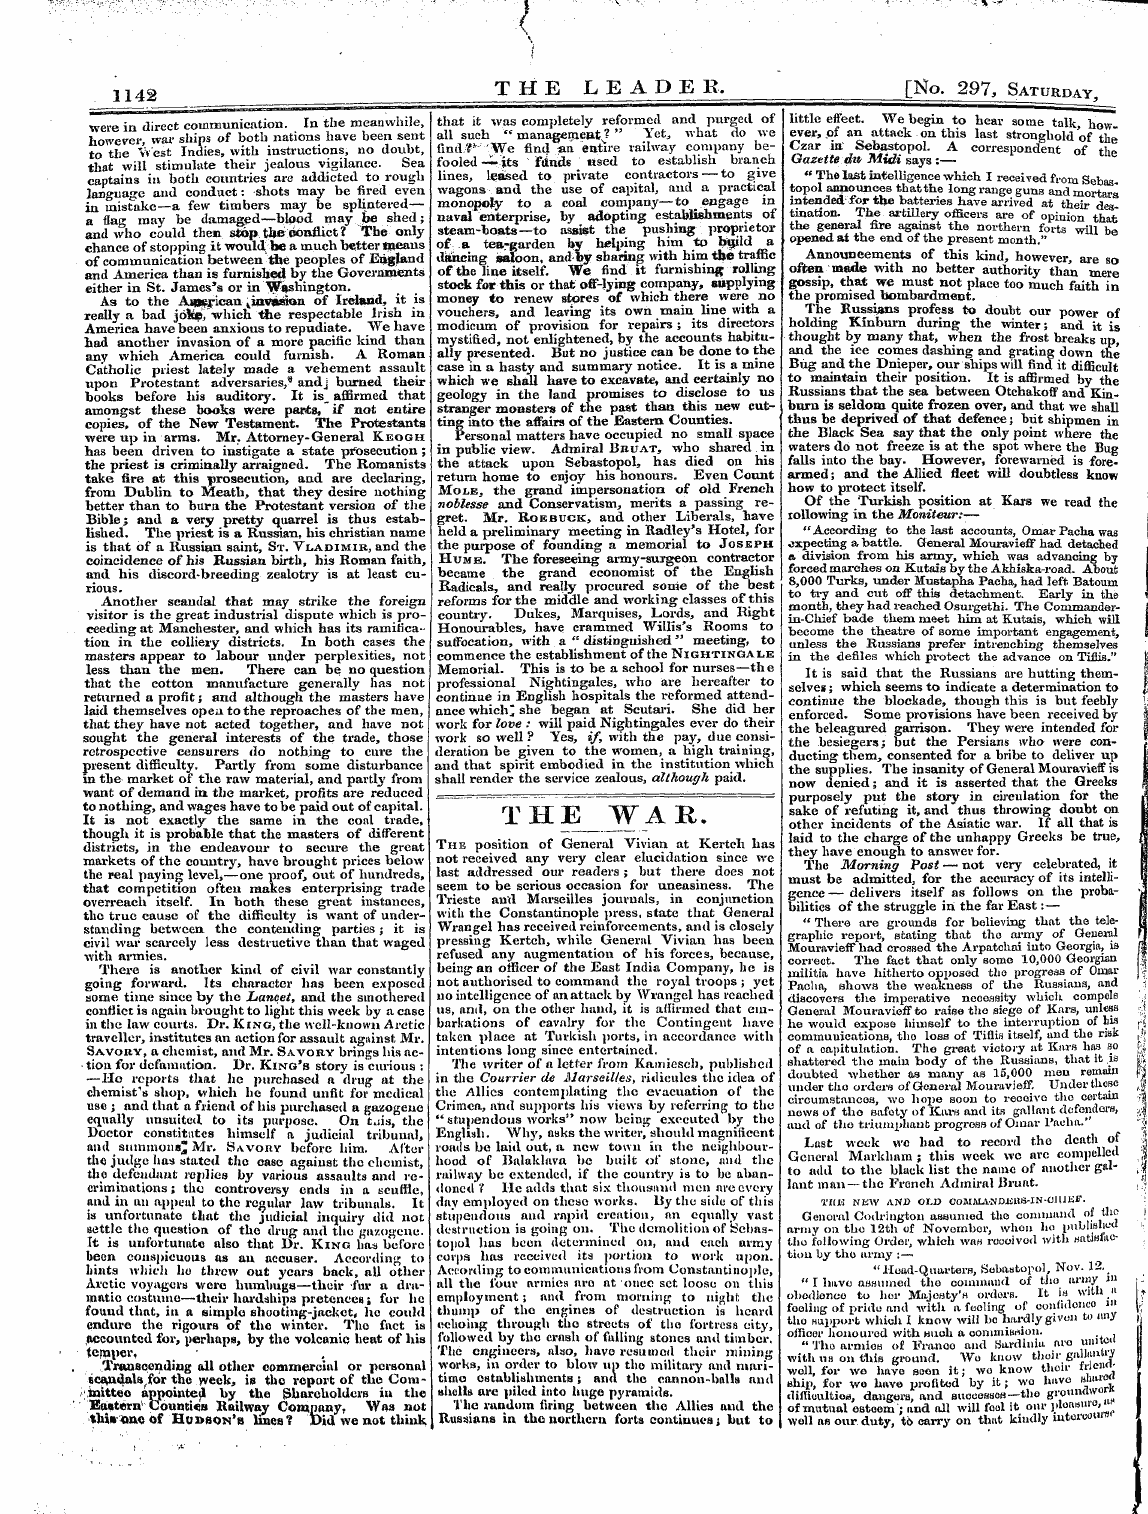 Leader (1850-1860): jS F Y, 1st edition - , T It T Wap _L Xx. Ji. Vv A. ±C.